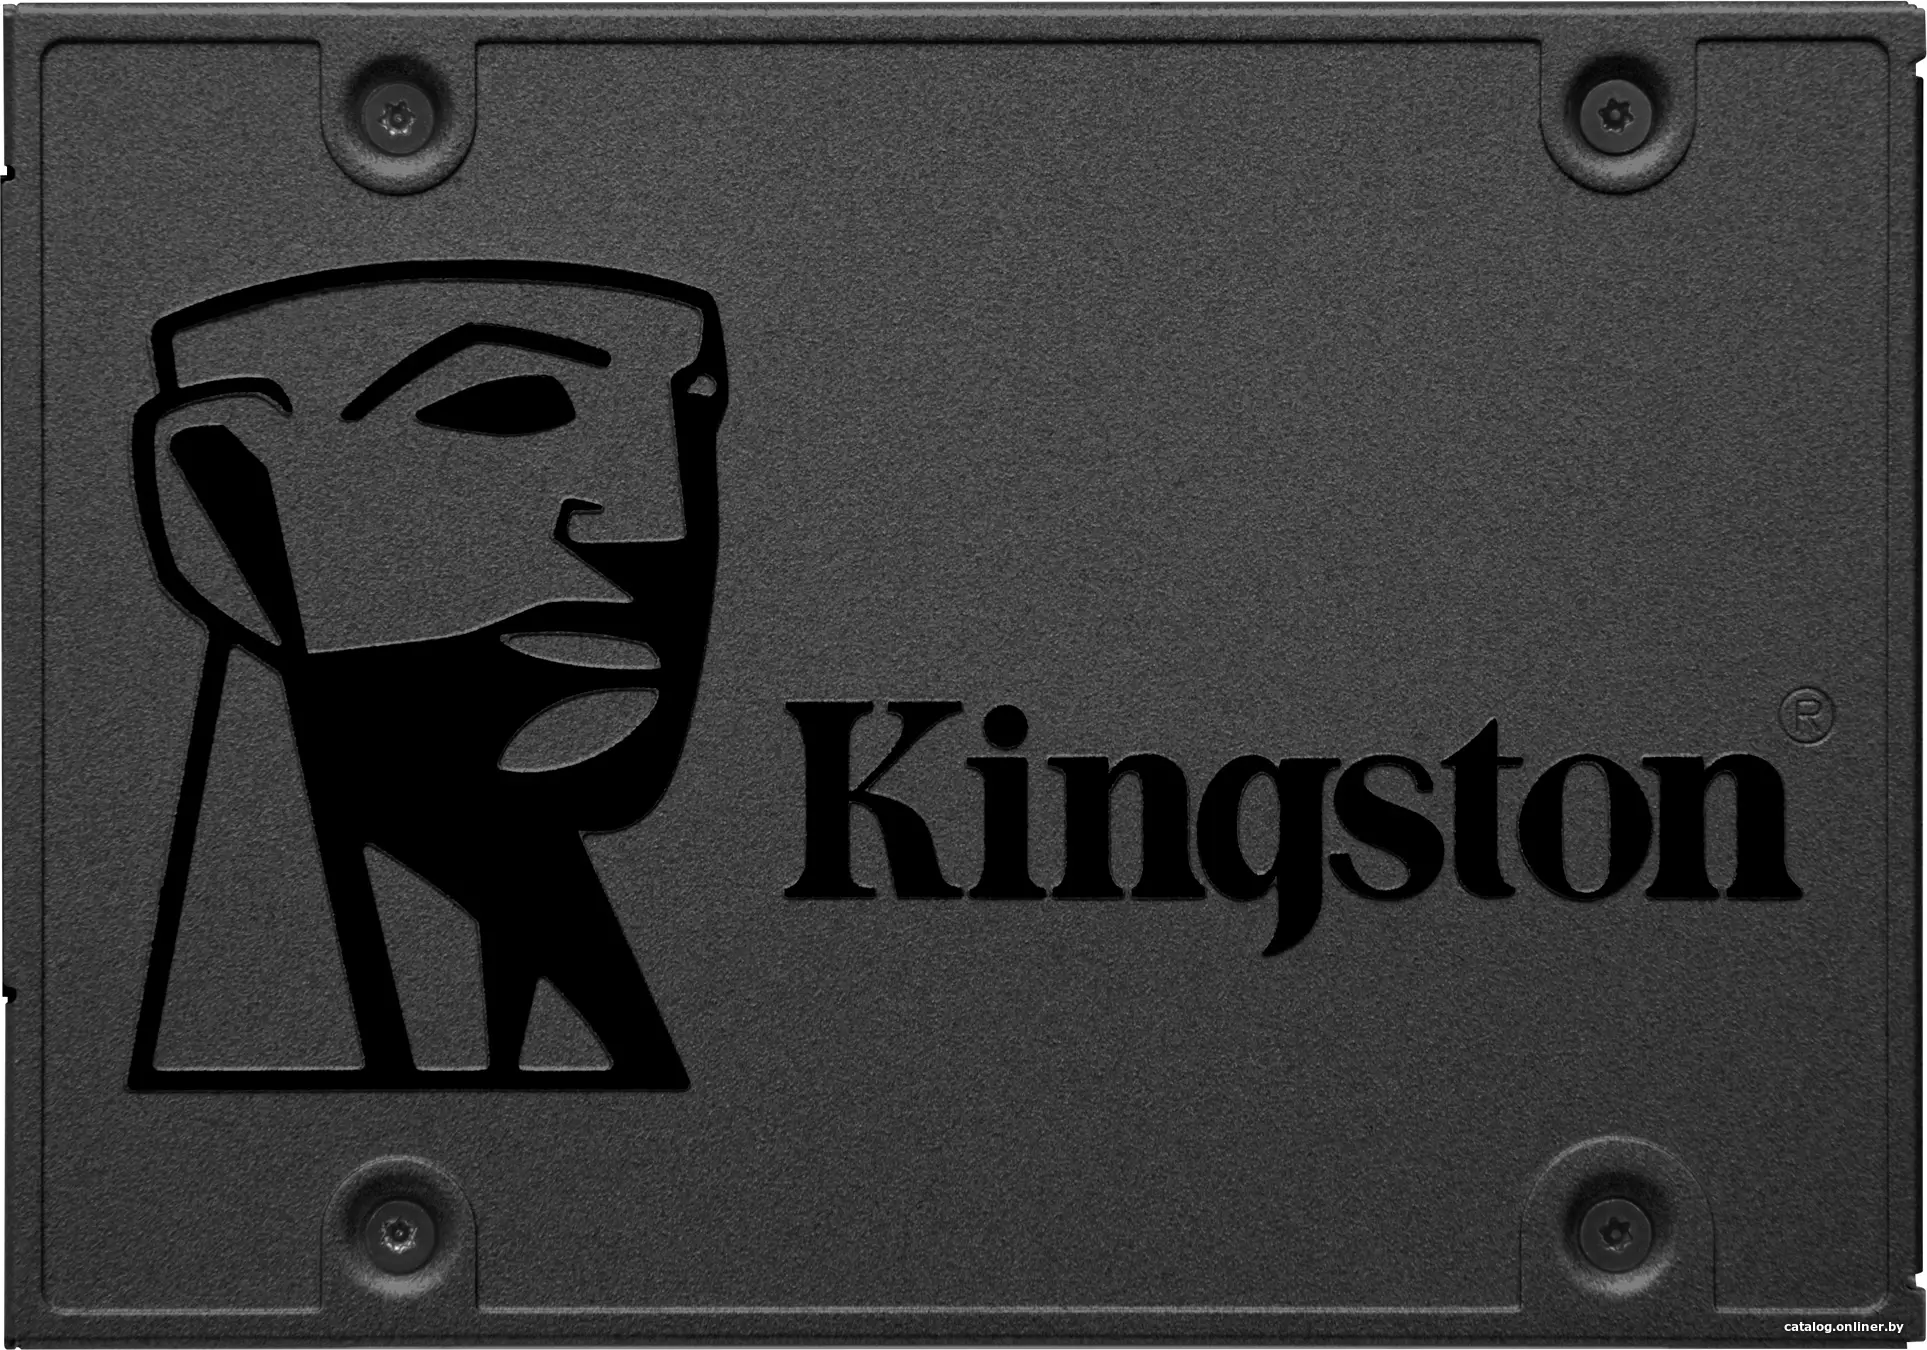 Купить KINGSTON A400 240GB SSD, 2.5” 7mm, SATA 6 Gb/s, Read/Write: 500 / 350 MB/s, цена, опт и розница